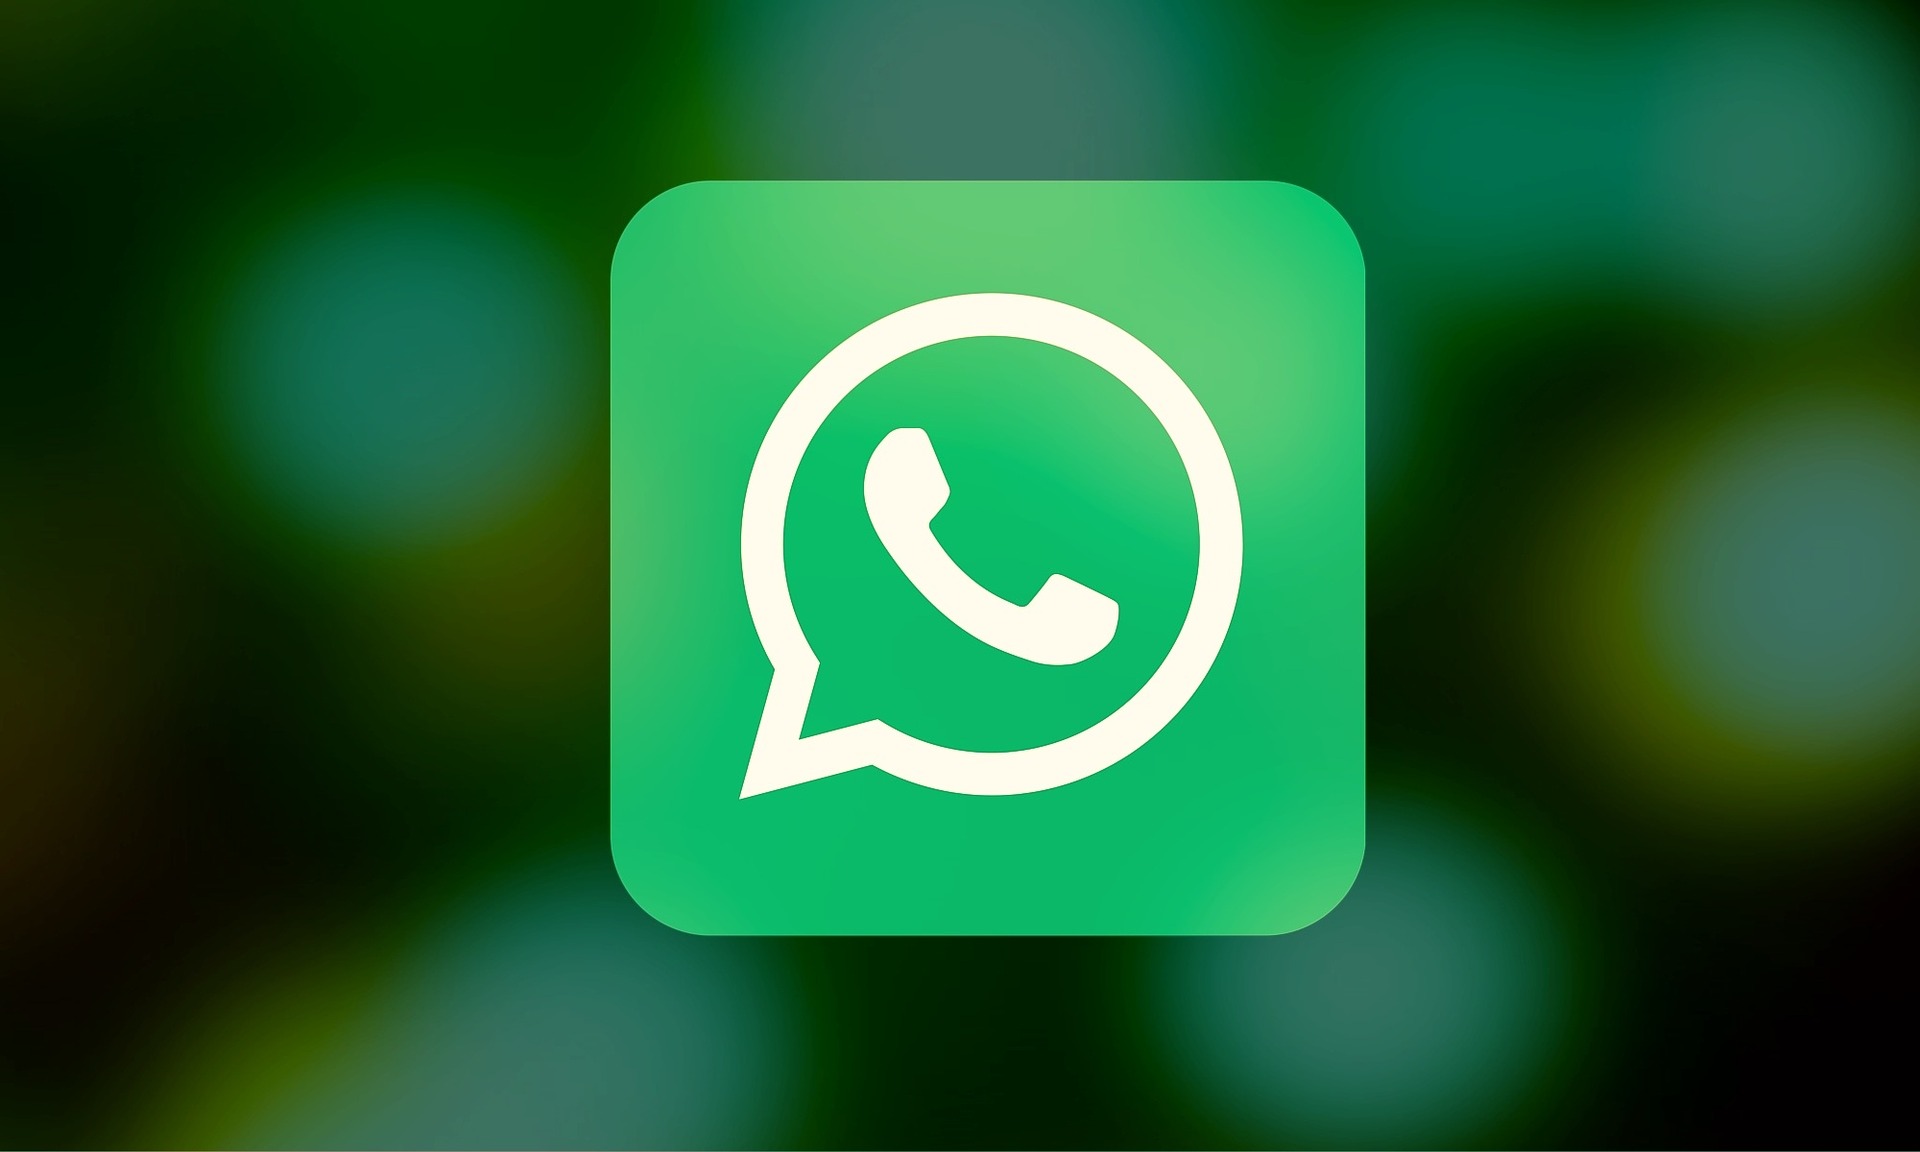  WhatsApp confronté à une nouvelle arnaque, focalisée sur Peppa Pig